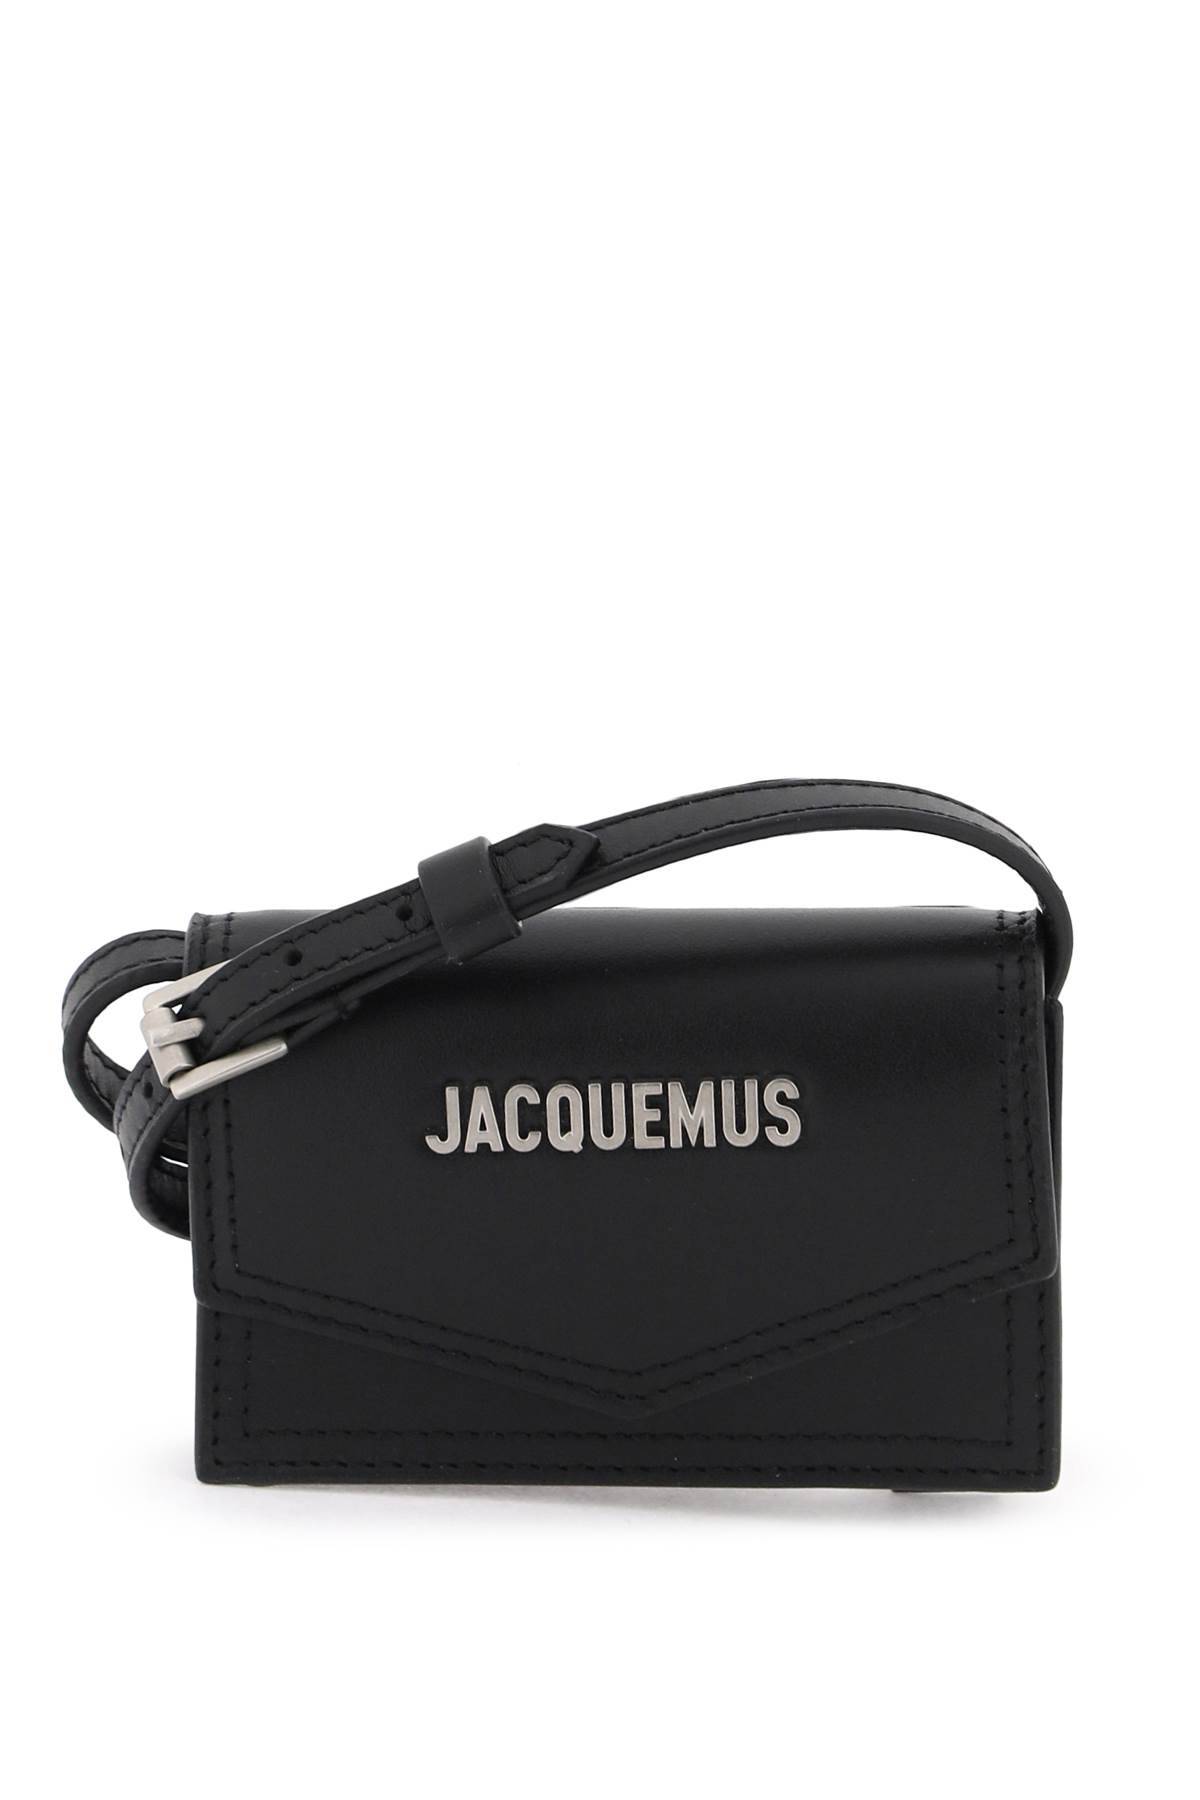 Jacquemus JACQUEMUS 'le porte azur' crossbody cardholder